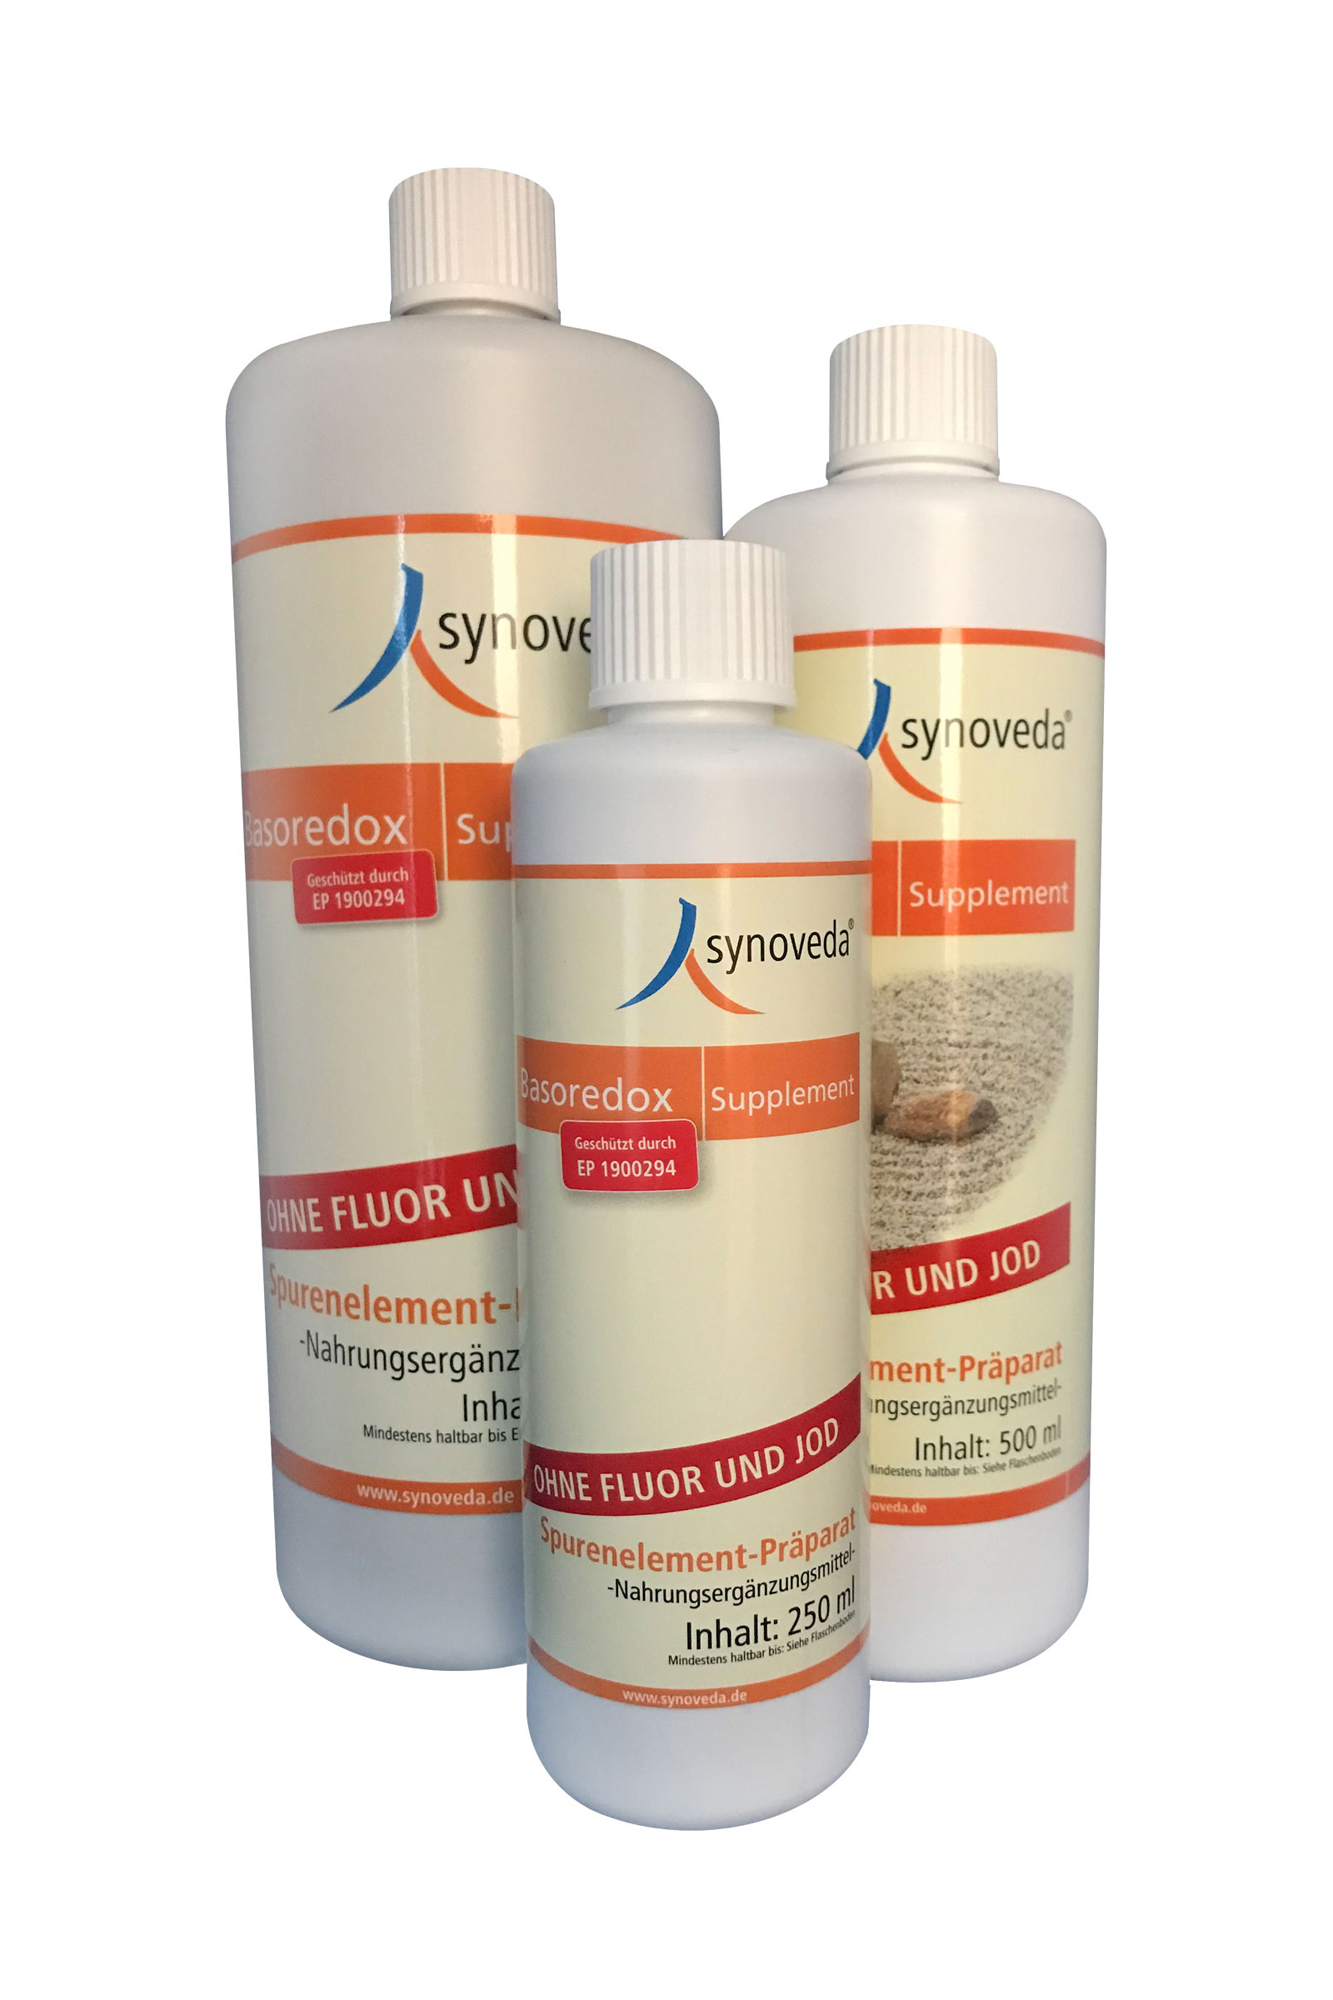 Synoveda Basoredox Supplement ohne Fluor und Jod